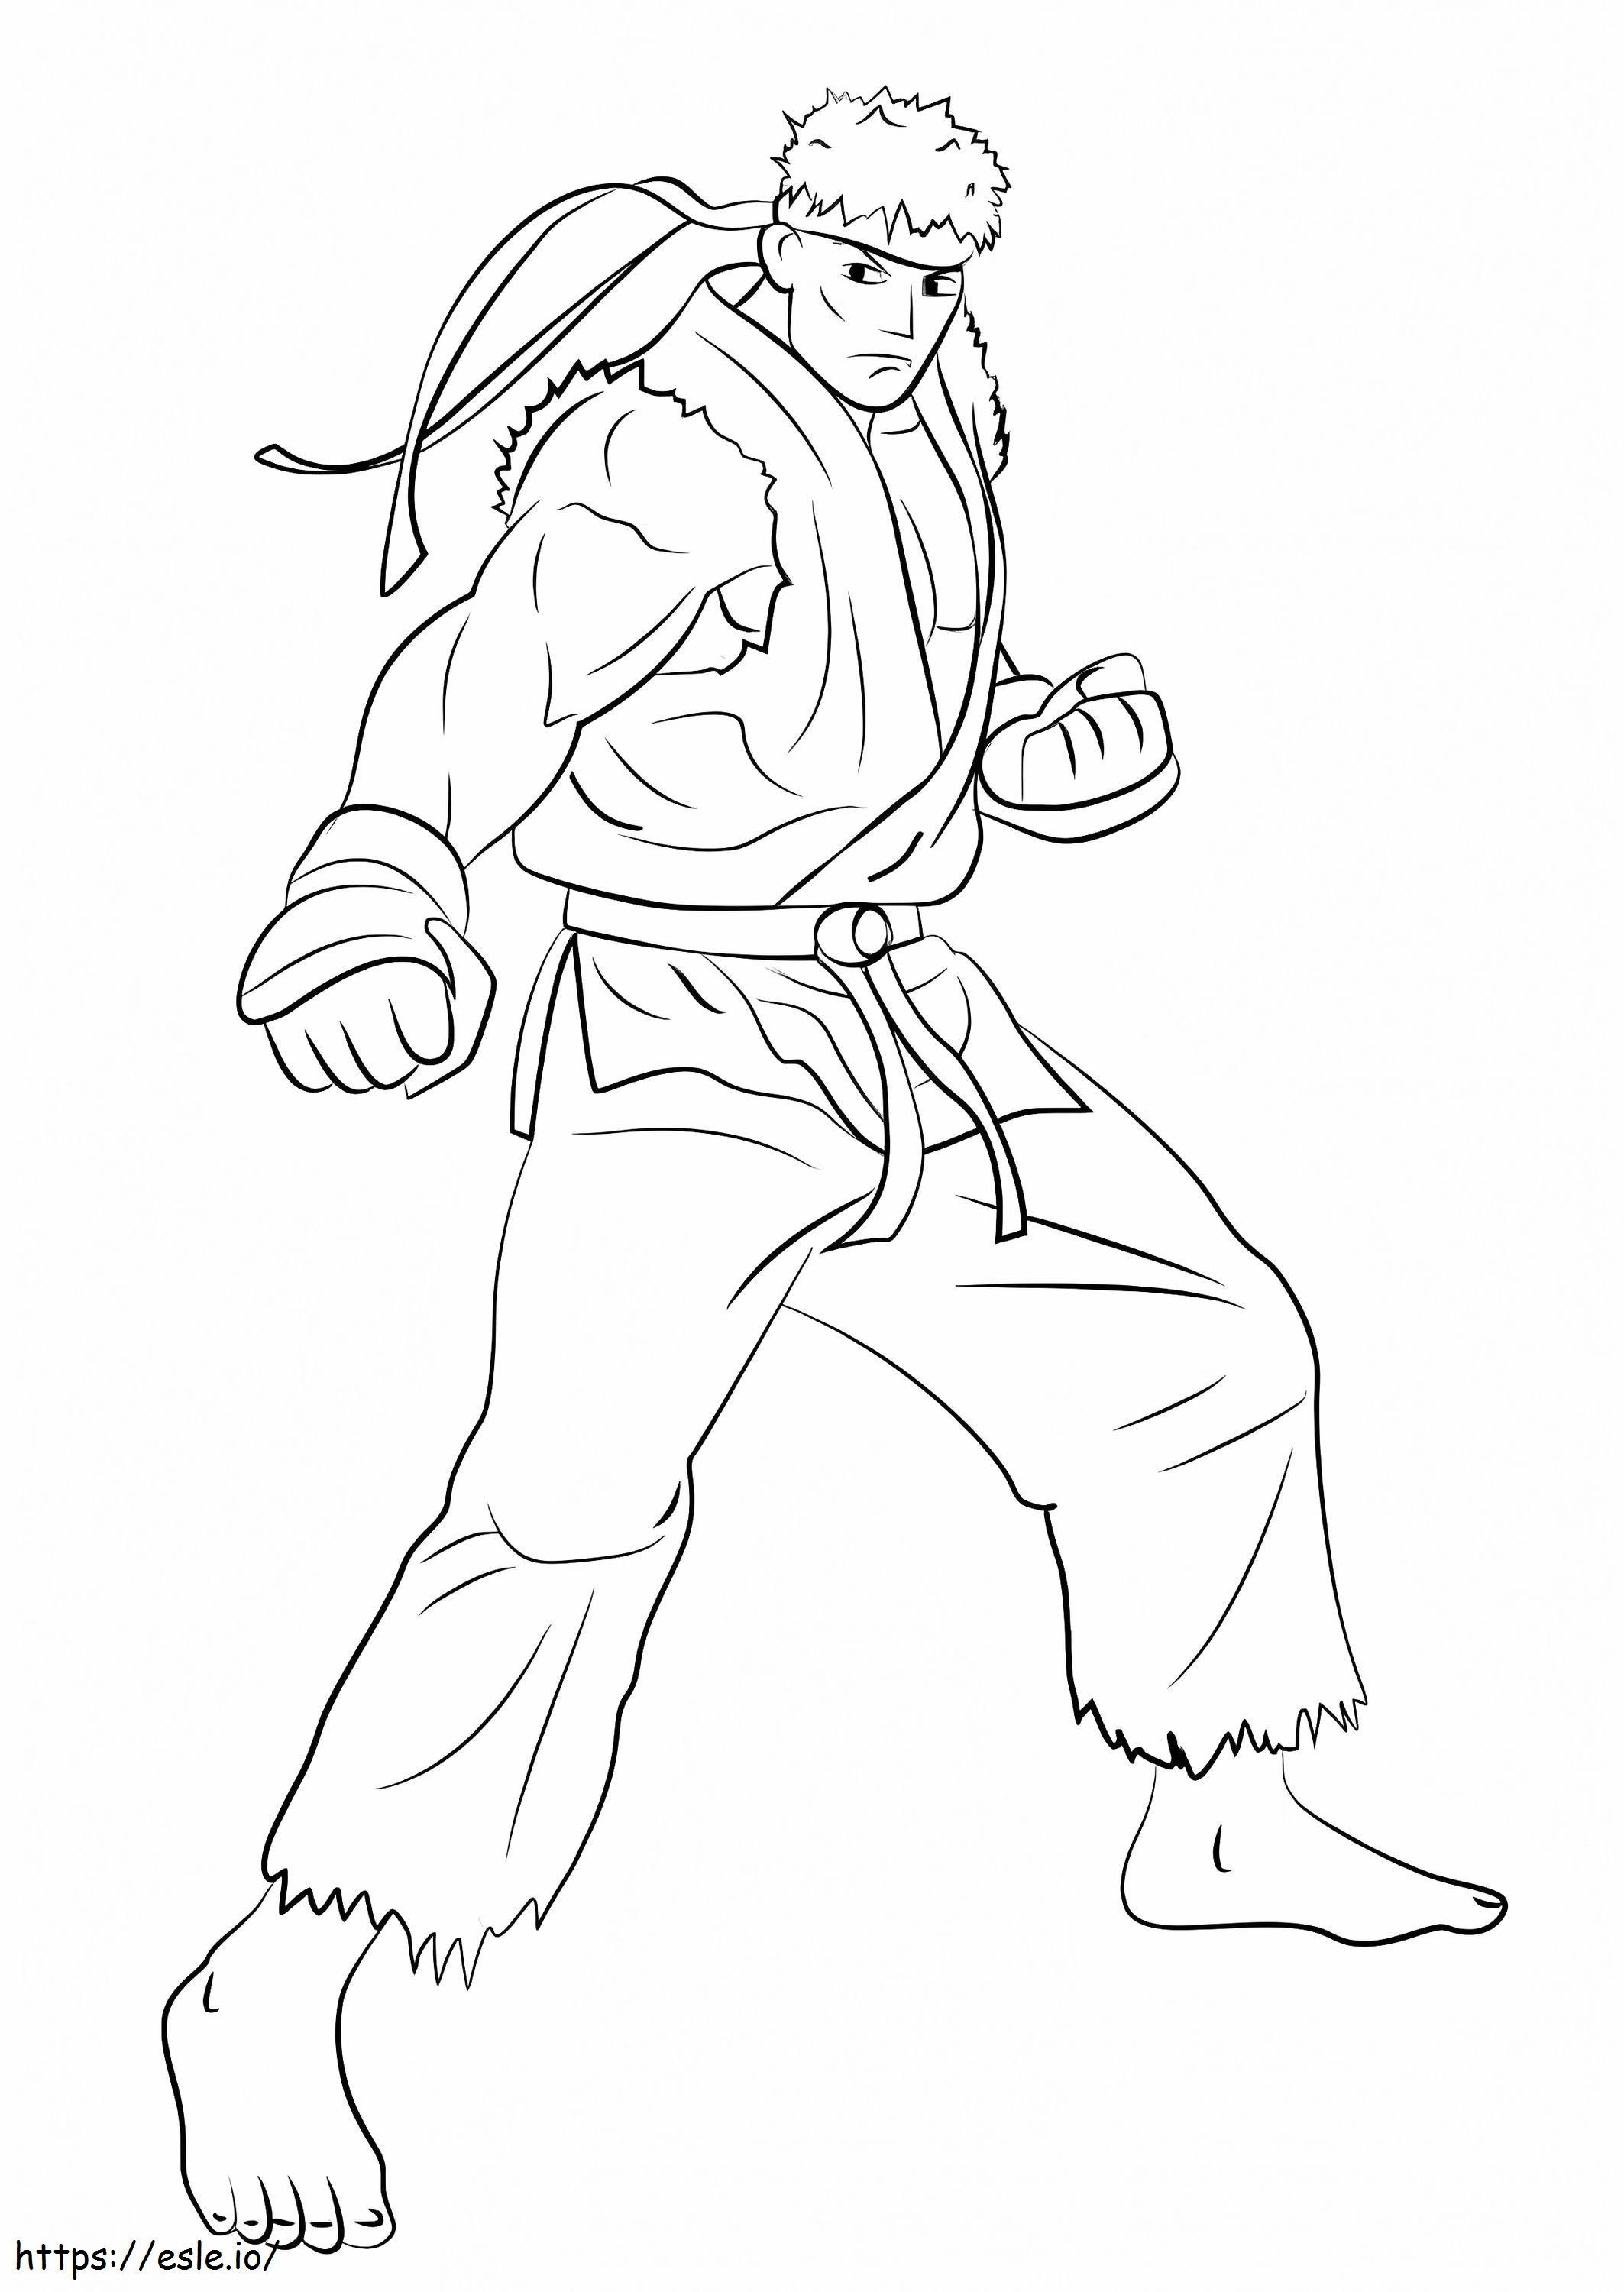 Ryu-gevechten kleurplaat kleurplaat